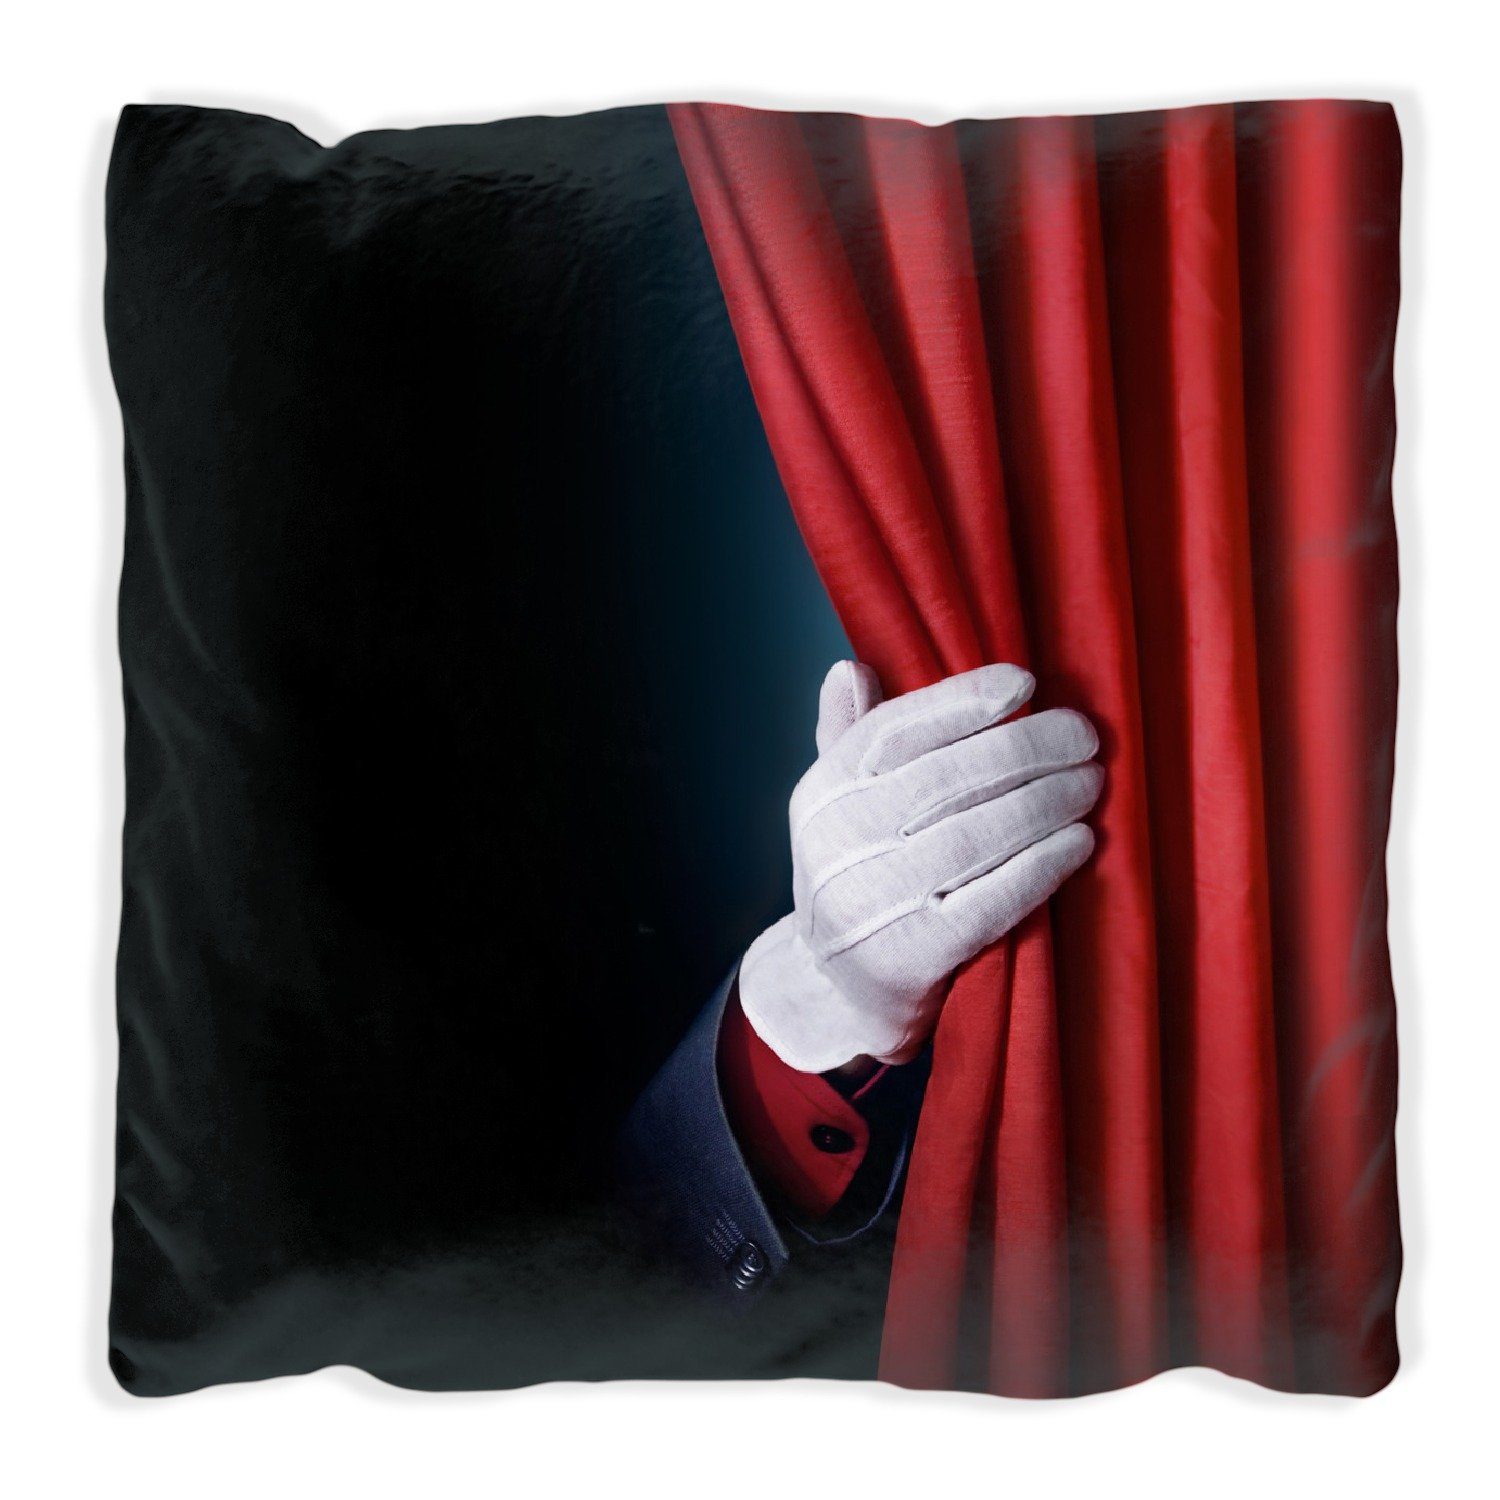 Wallario Dekokissen Vorhang auf für die Show Hand hinterm roten Vorhang, handgenäht